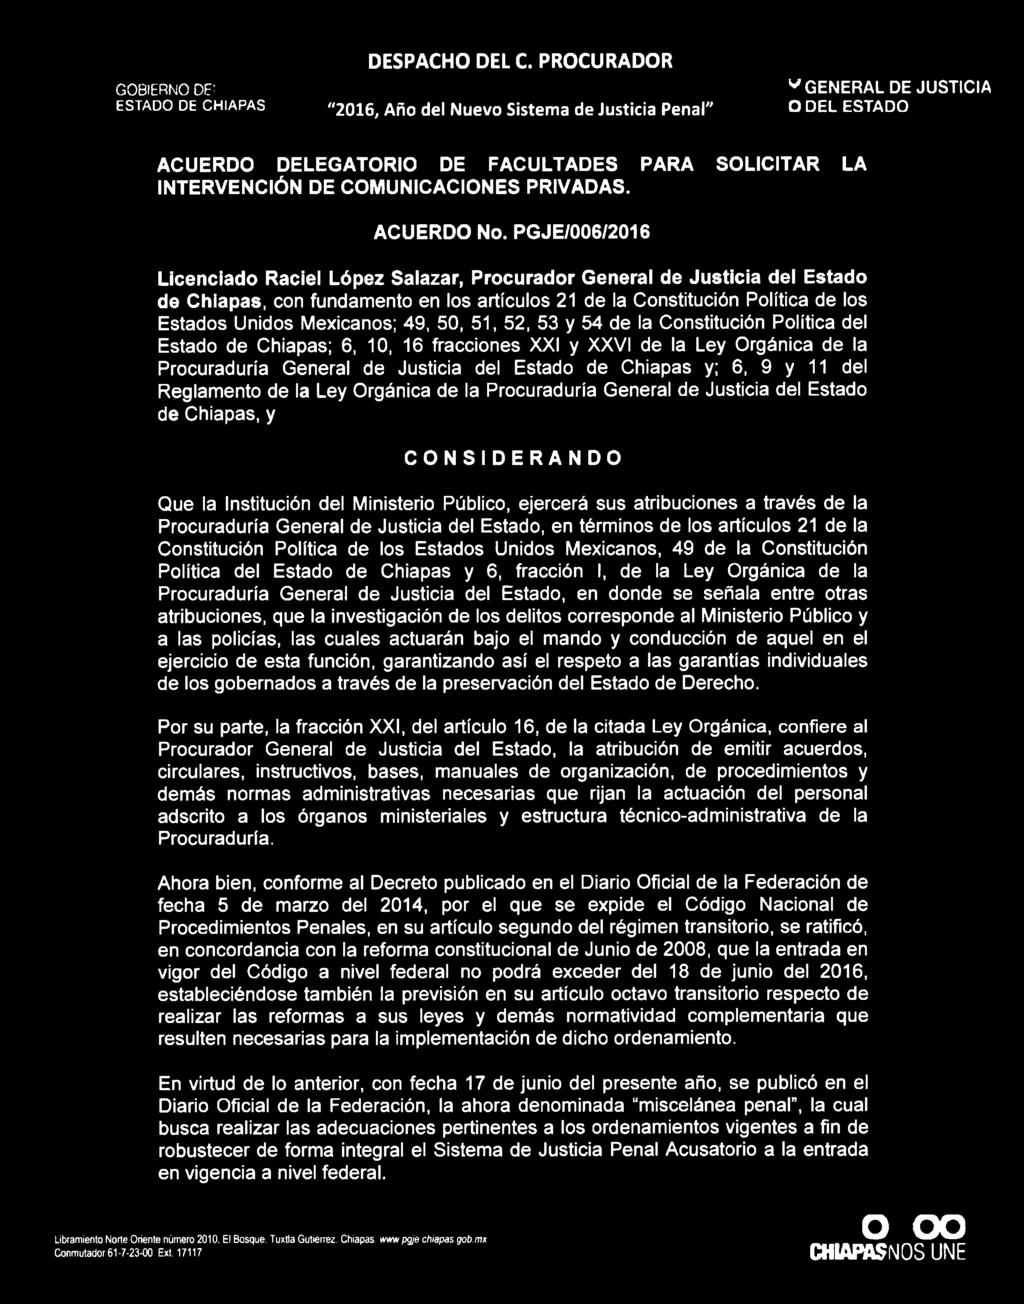 49, 50, 51, 52, 53 y 54 de la Constitución Política del Estado de Chiapas; 6, 10, 16 fracciones XXI y XXVI de la Ley Orgánica de la Procuraduría General de Justicia del Estado de Chiapas y; 6, 9 y 11